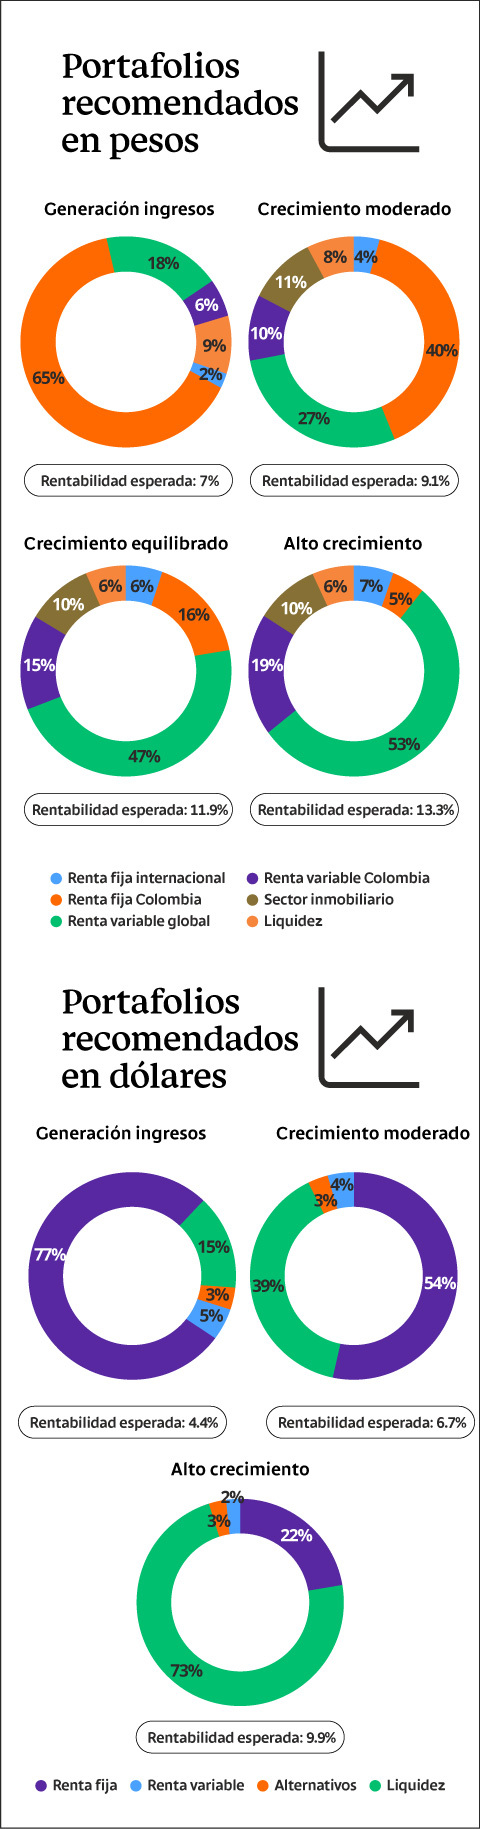 Portafolios recomendados para invertir tanto en pesos como en dólares del Grupo Bancolombia según objetivos de inversión y perfil de riesgo a asumir, con corte a junio de 2021.